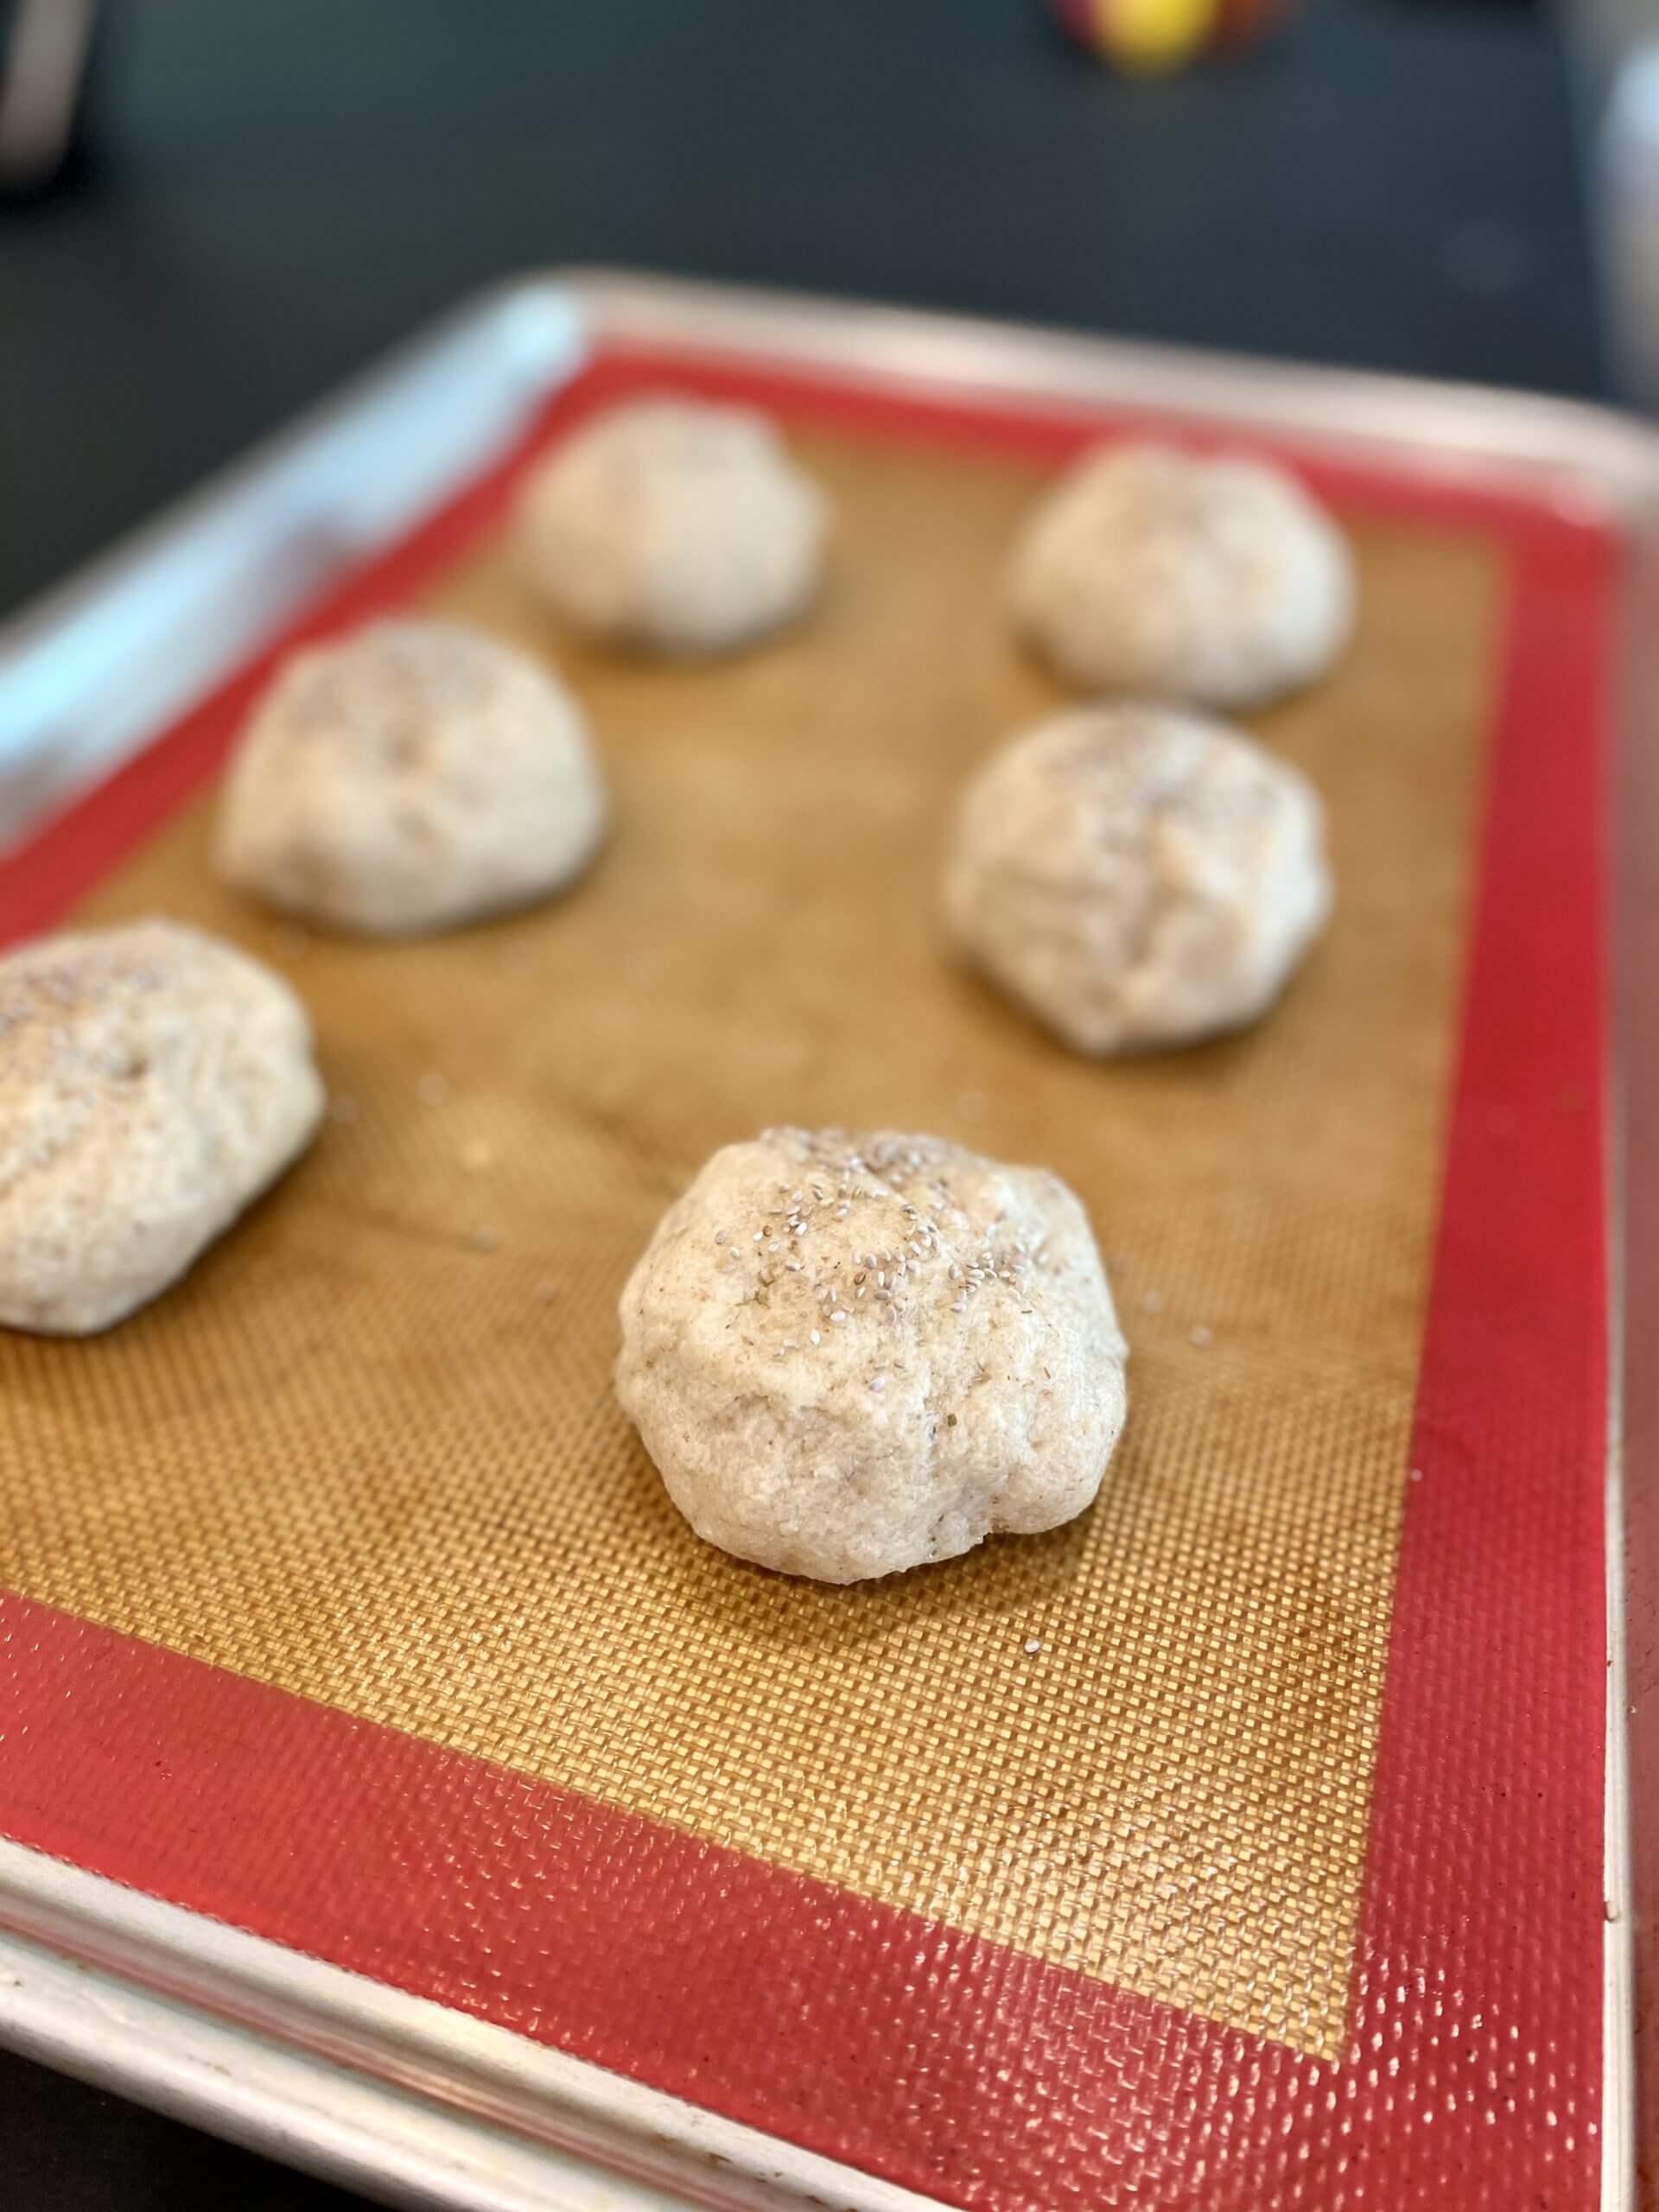 Keto bread rolls - dough on baking sheet - 2